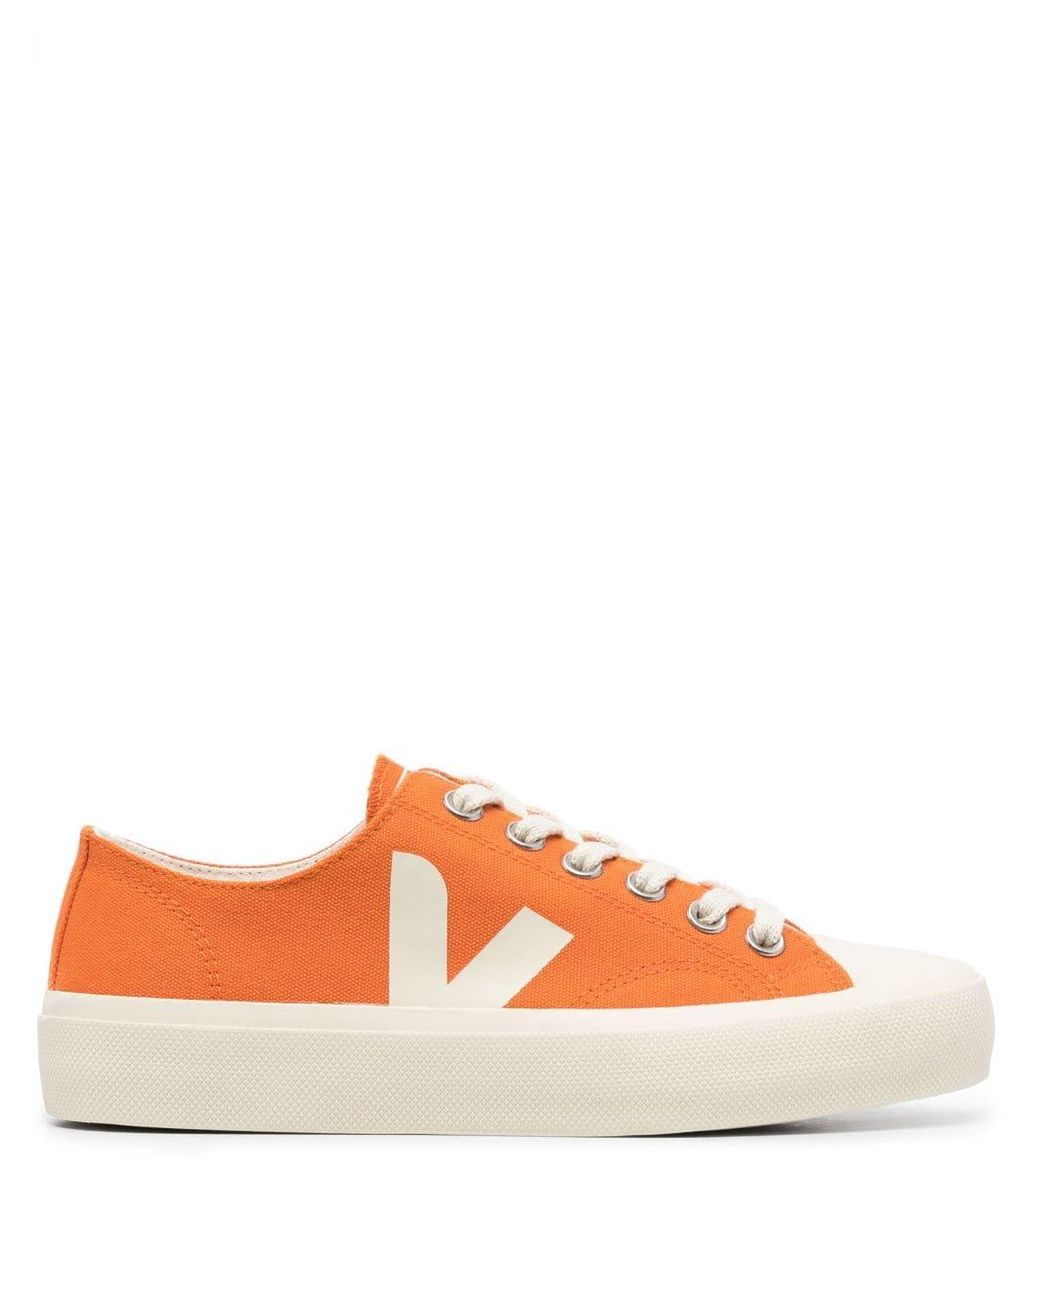 Veja Wata Li Lace-up Sneakers in Orange | Lyst